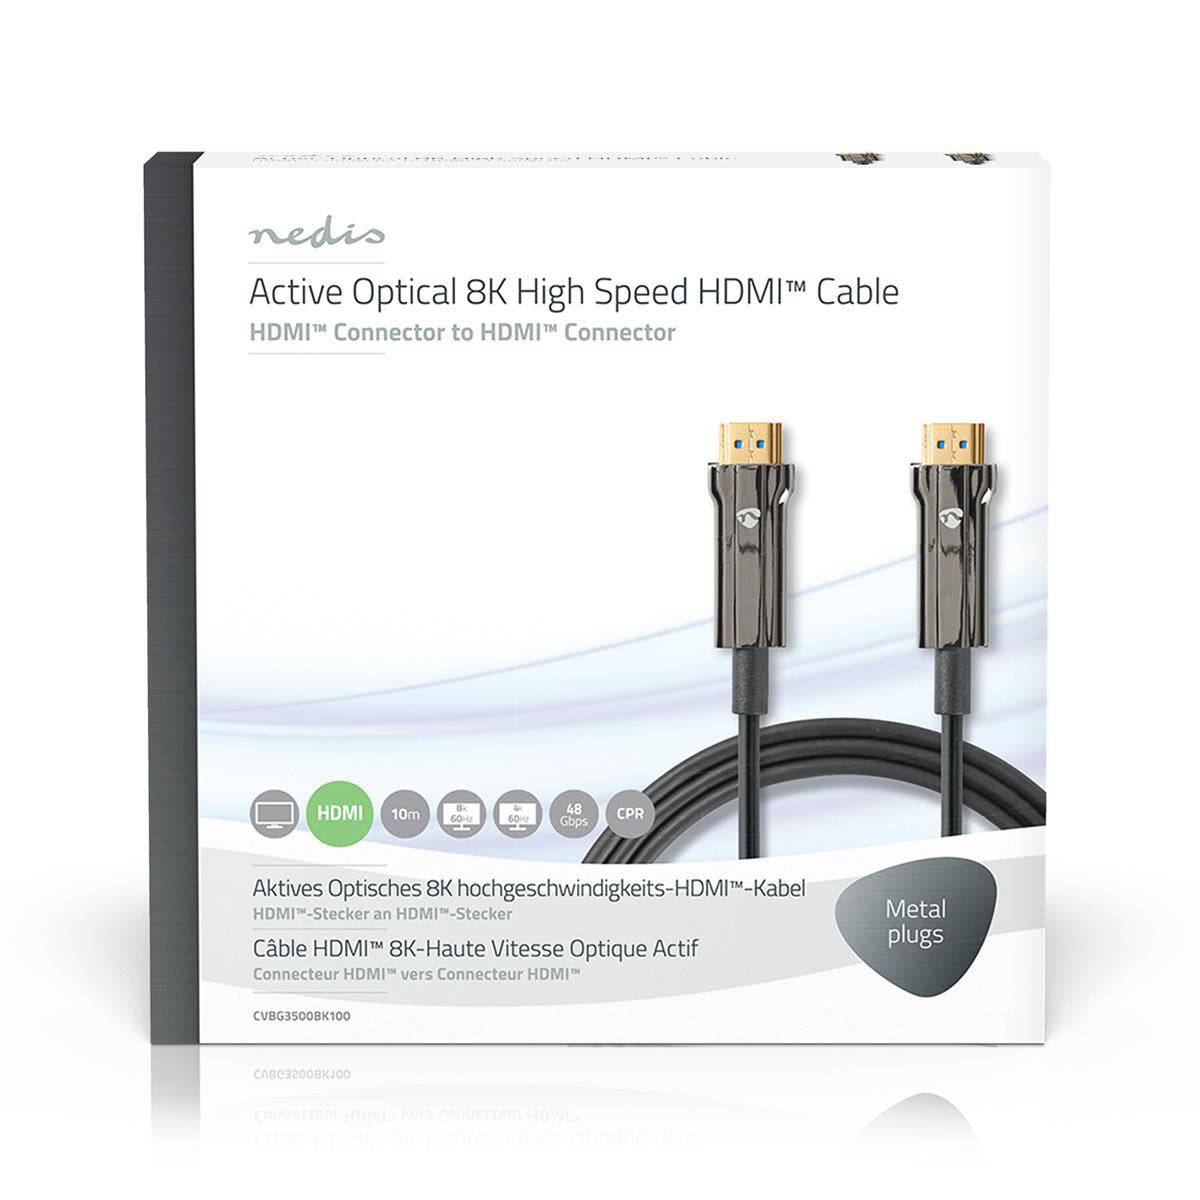 Aktive Optische Ultra High Speed HDMI-Kabel mit Ethernet | HDMI™ Stecker | HDMI™ Stecker | 8K@60Hz | 48 Gbps | 10.0 m | Rund | PVC | Schwarz | Kartonverpackung